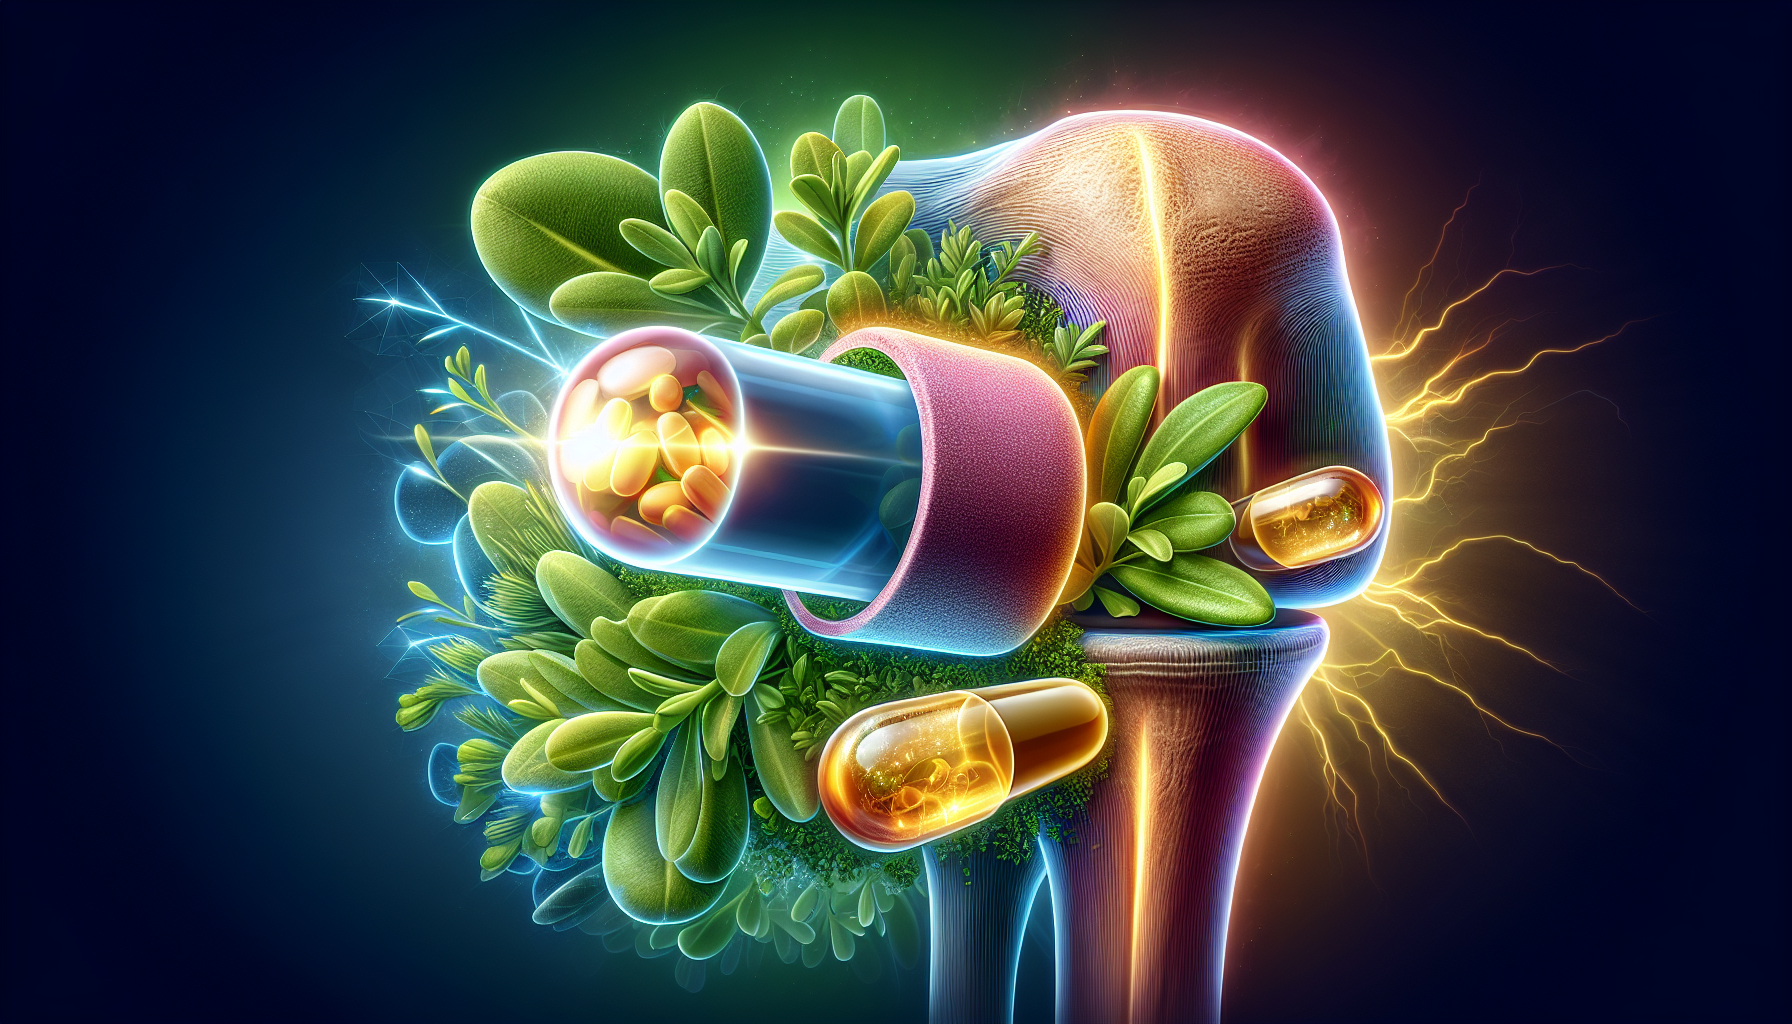 Illustration of supplements for knee cartilage regeneration